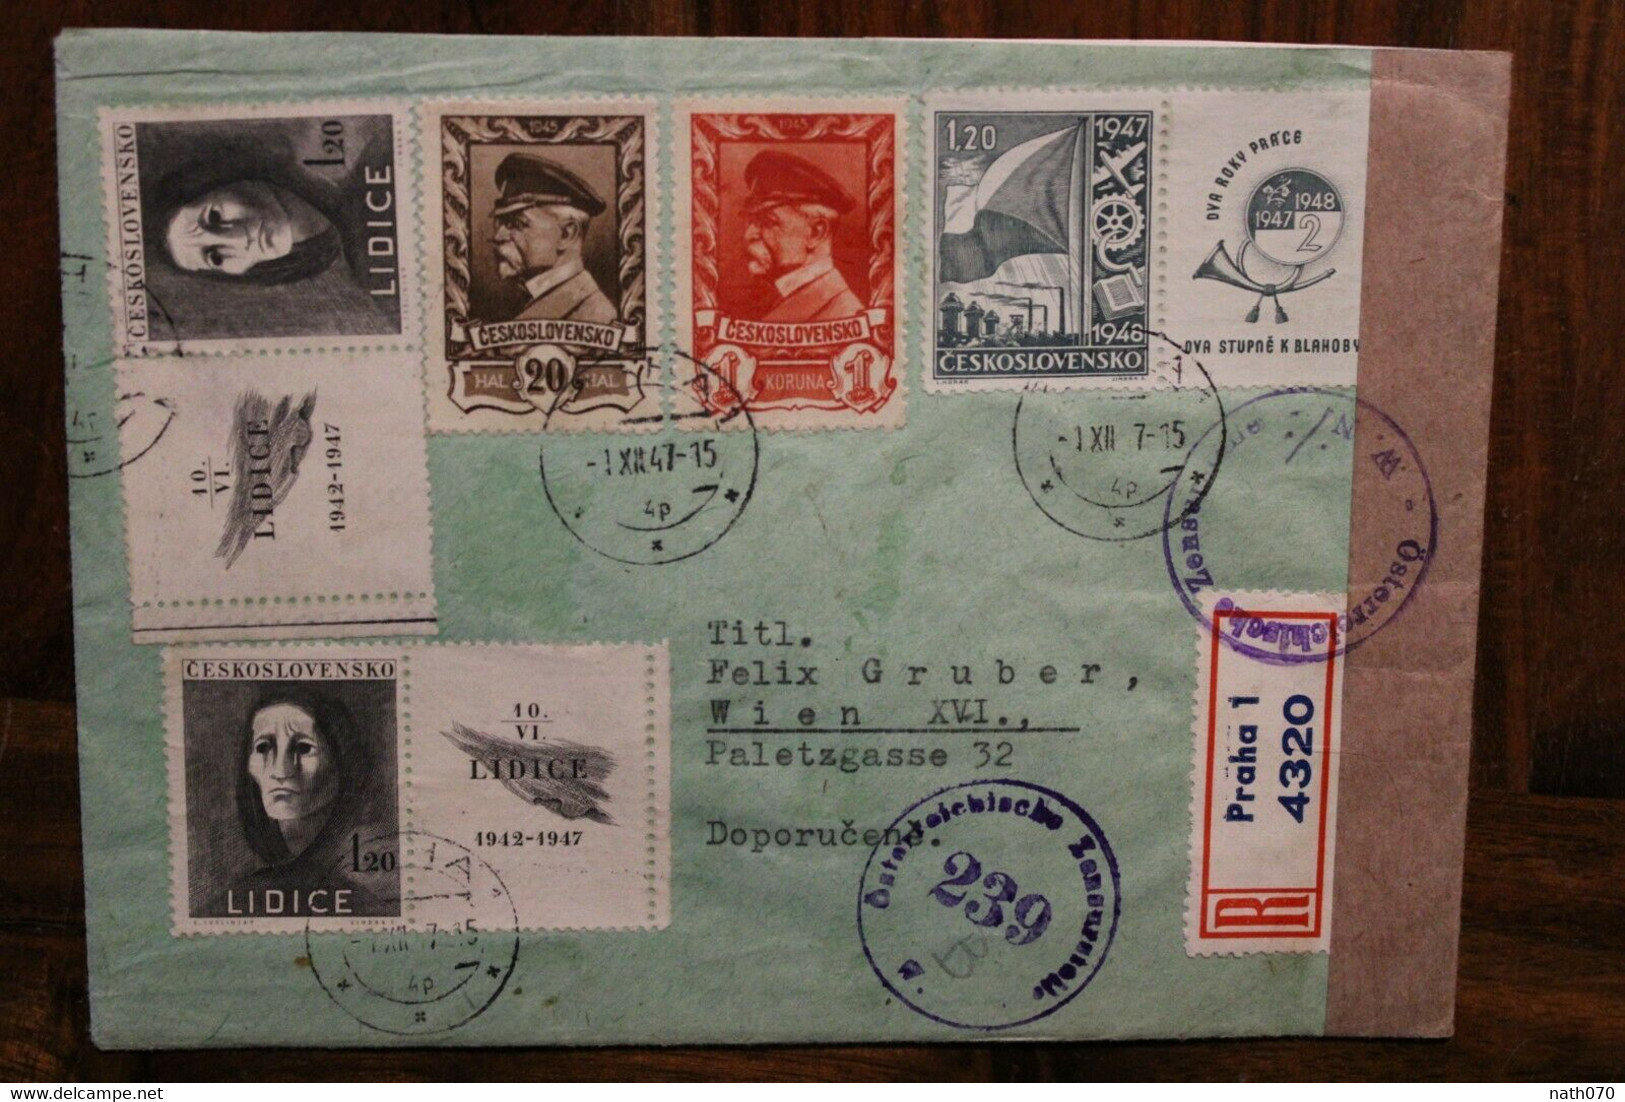 1947 Tschechoslowakei Cover Air Mail Letadlem Luftpost Zensur Osterreich Censure Alliés Einschreiben Recommandé - Lettres & Documents